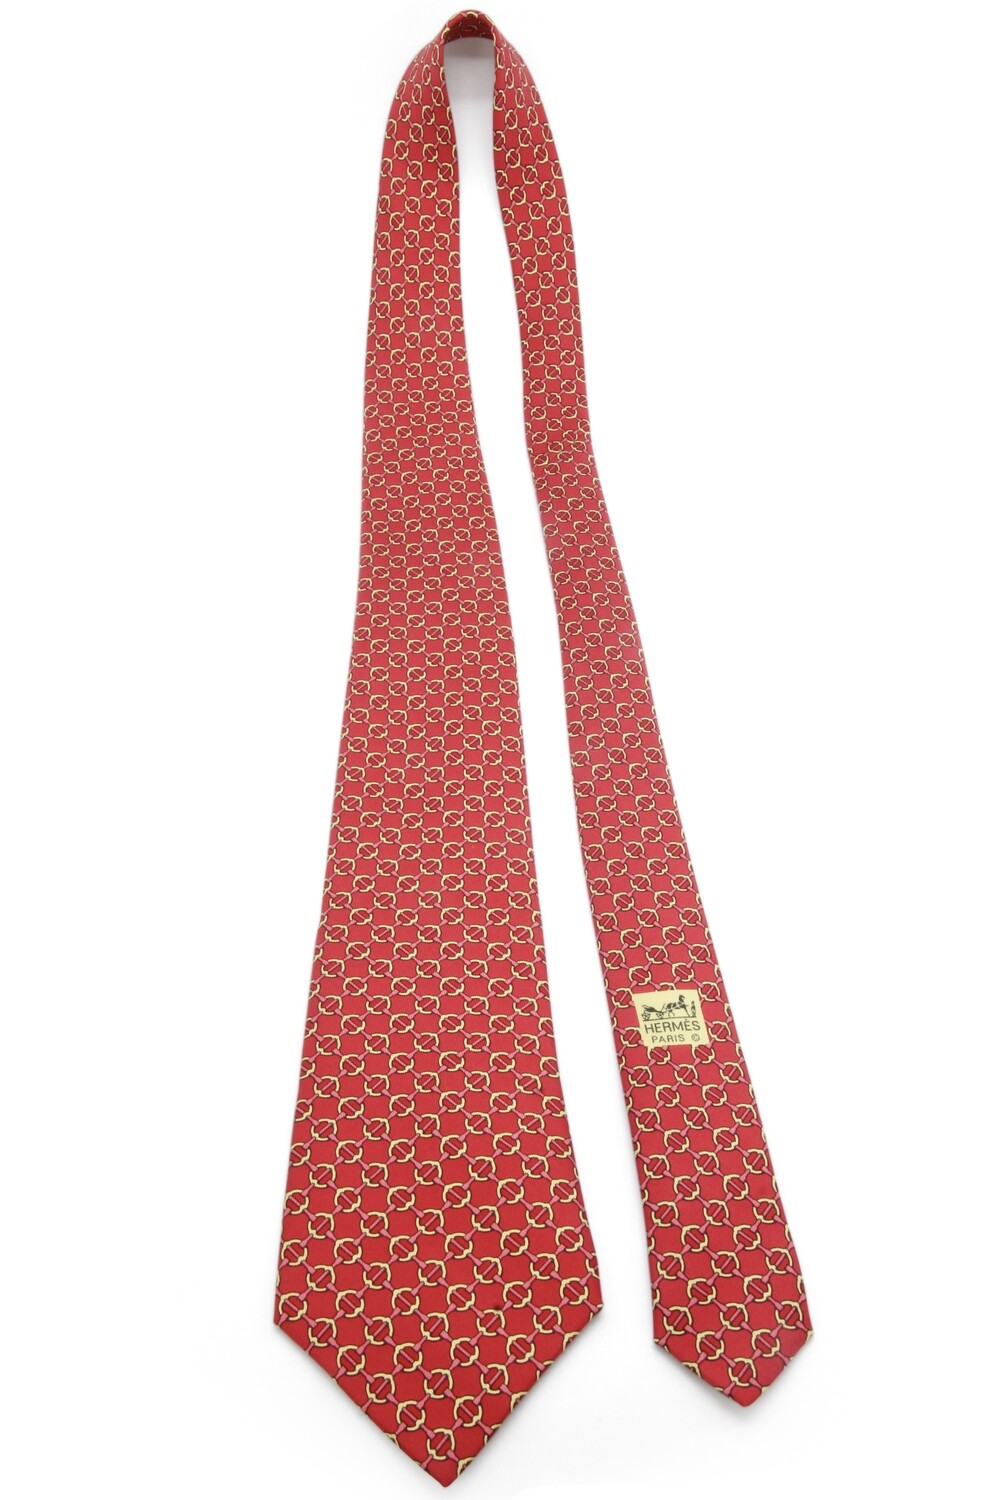 Cravate rouge et jaune Hermès en soie